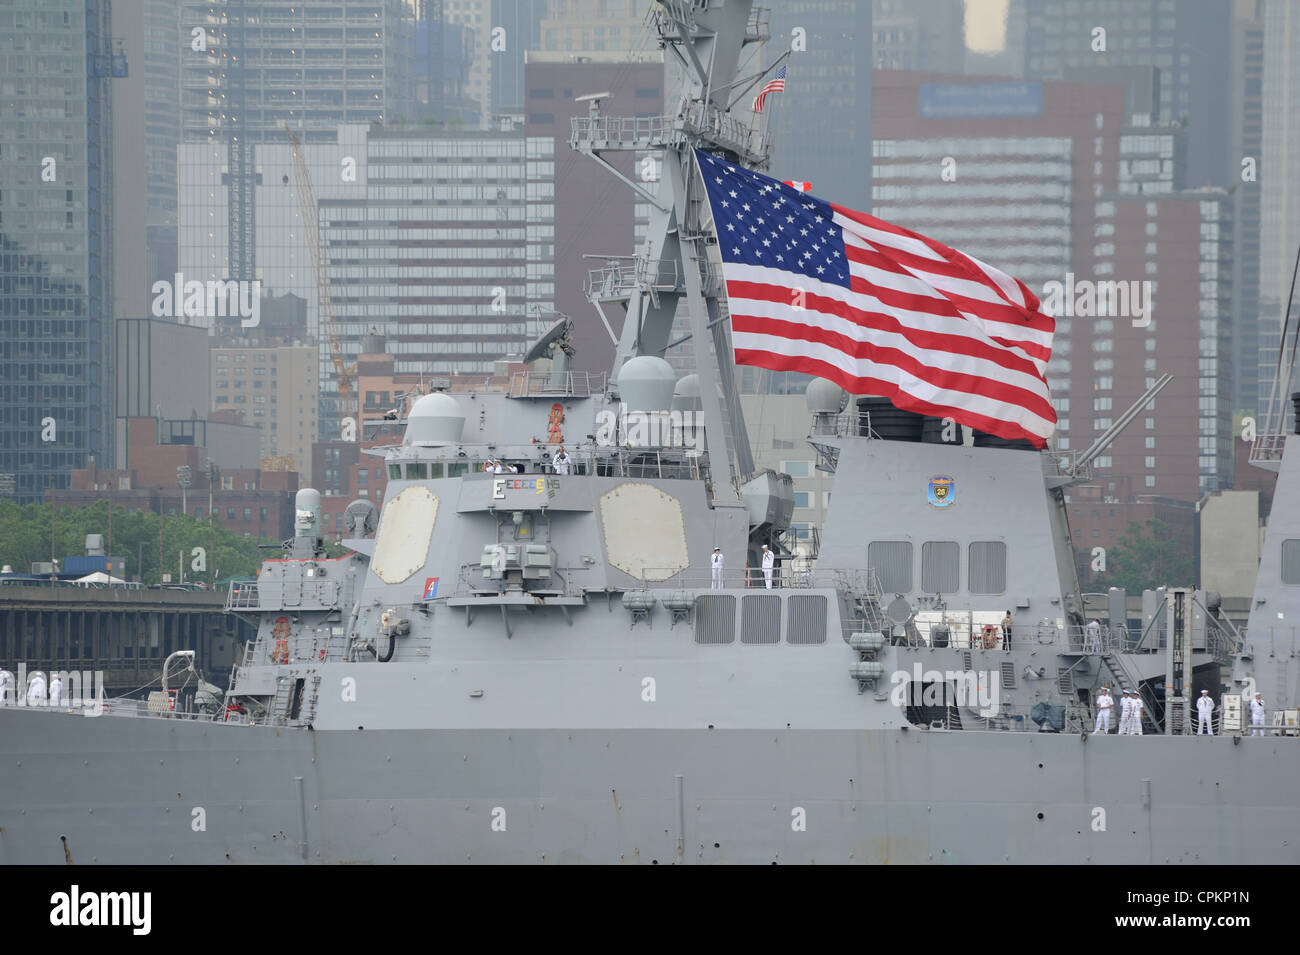 L'USS Donald Cook, un destroyer lance-missiles de la Marine américaine, a pris part à la Semaine de la flotte/OpSail parade sur la rivière Hudson. Banque D'Images